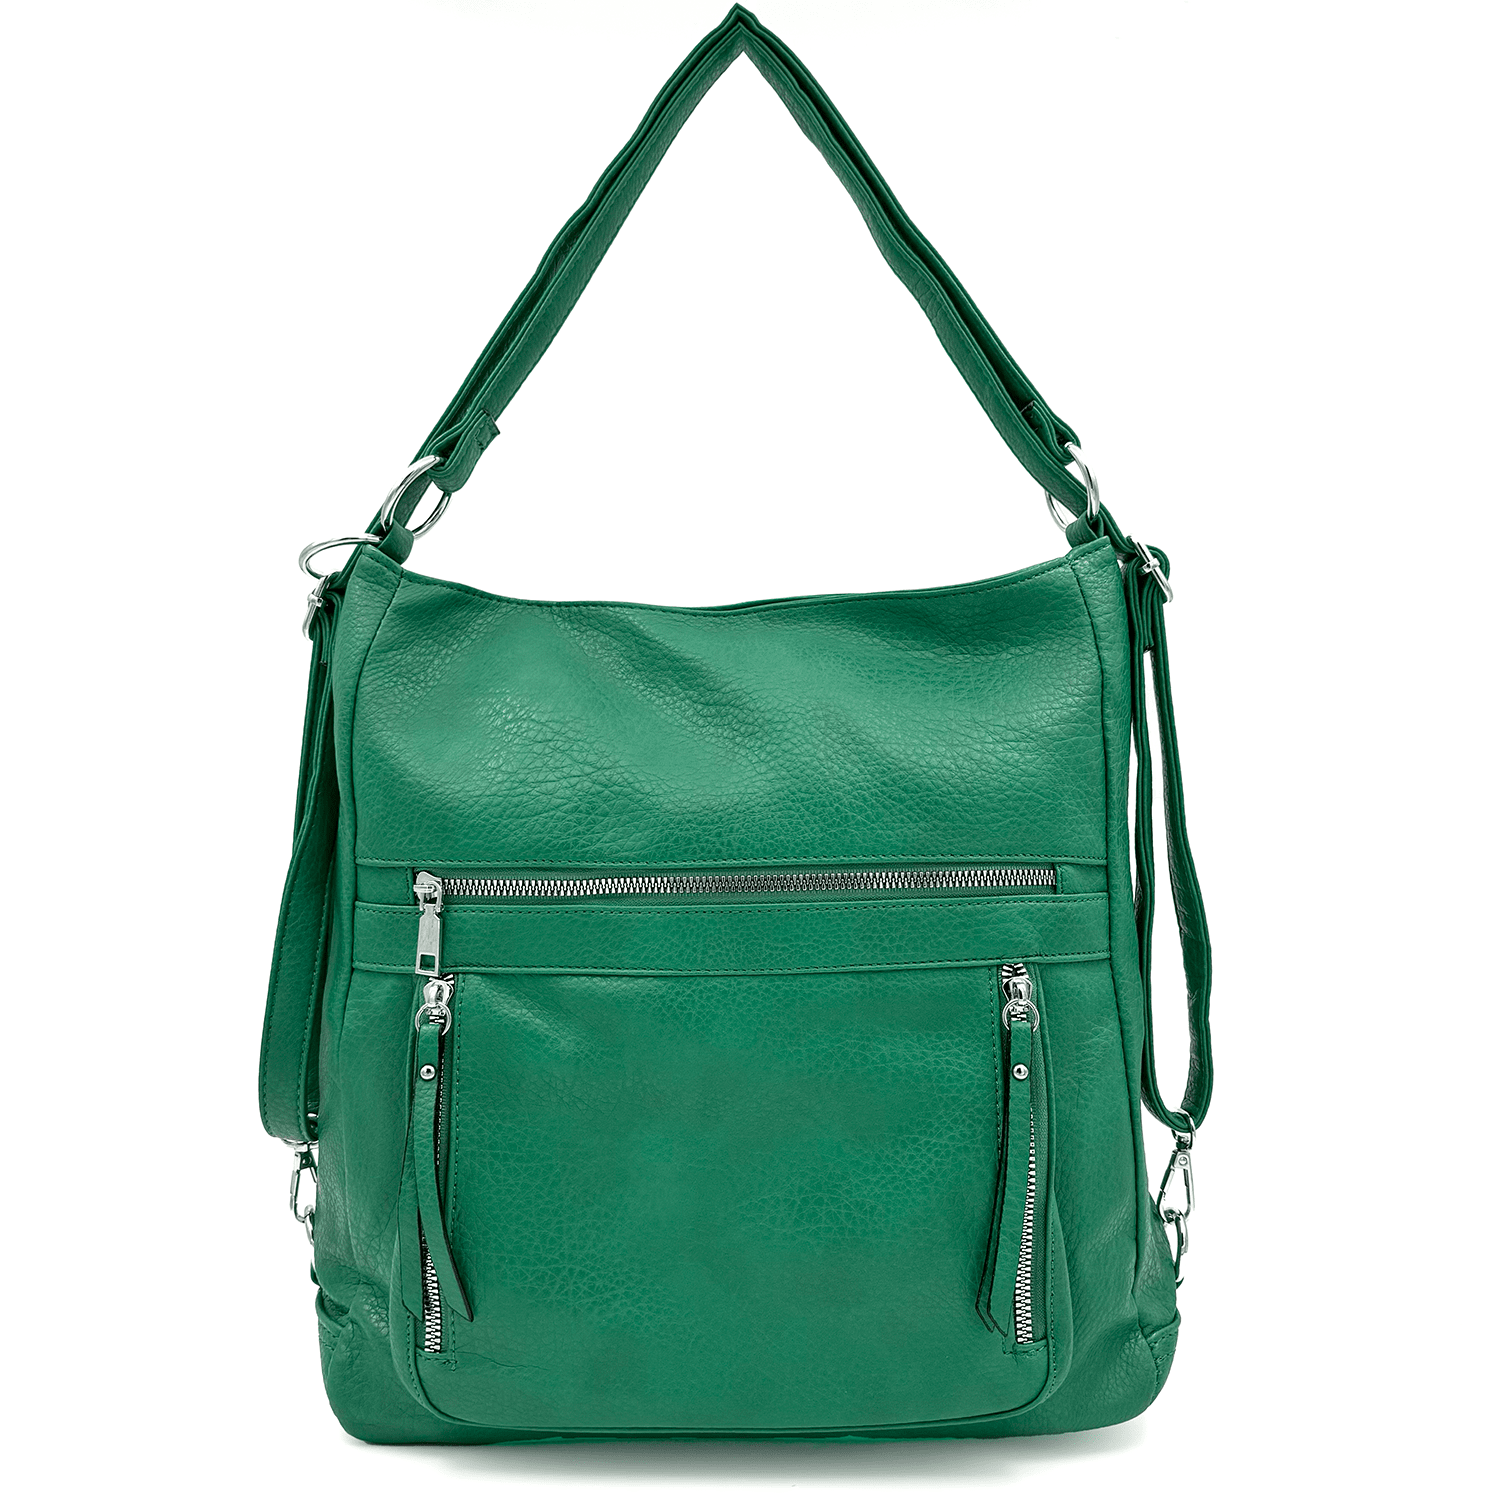 2 в 1 - Голяма чанта и раница Aisela - зелена